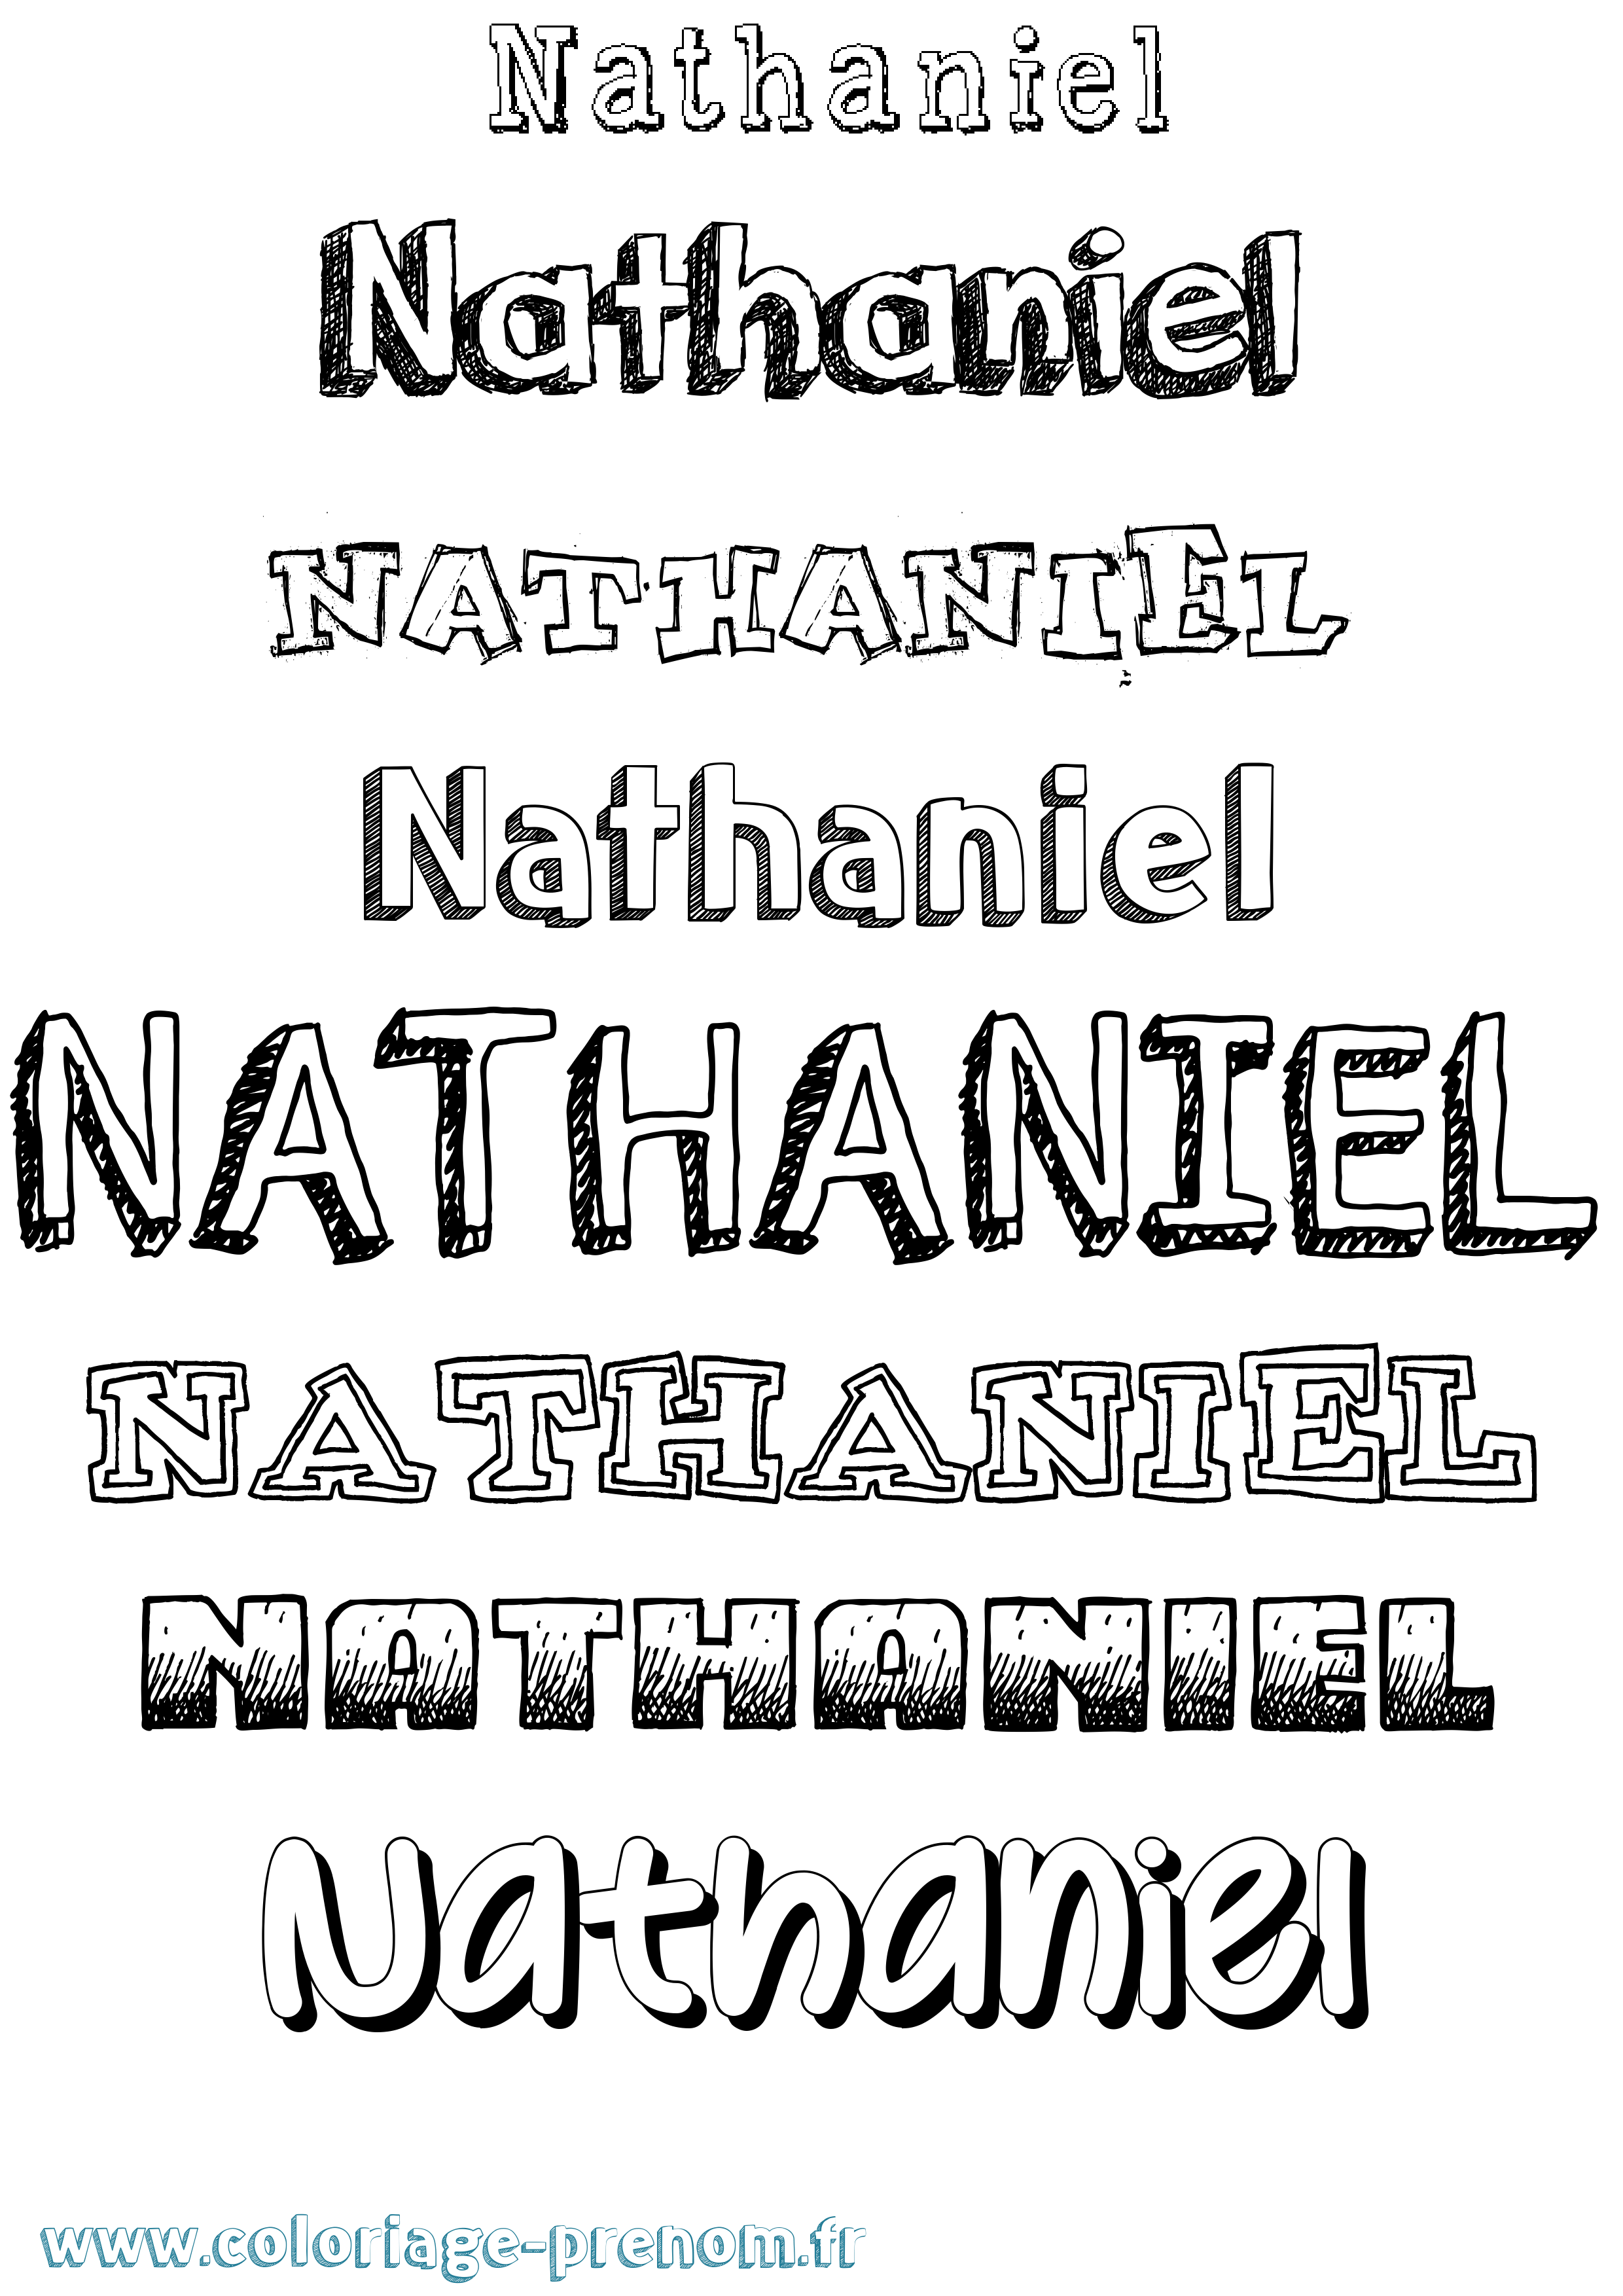 Coloriage prénom Nathaniel Dessiné